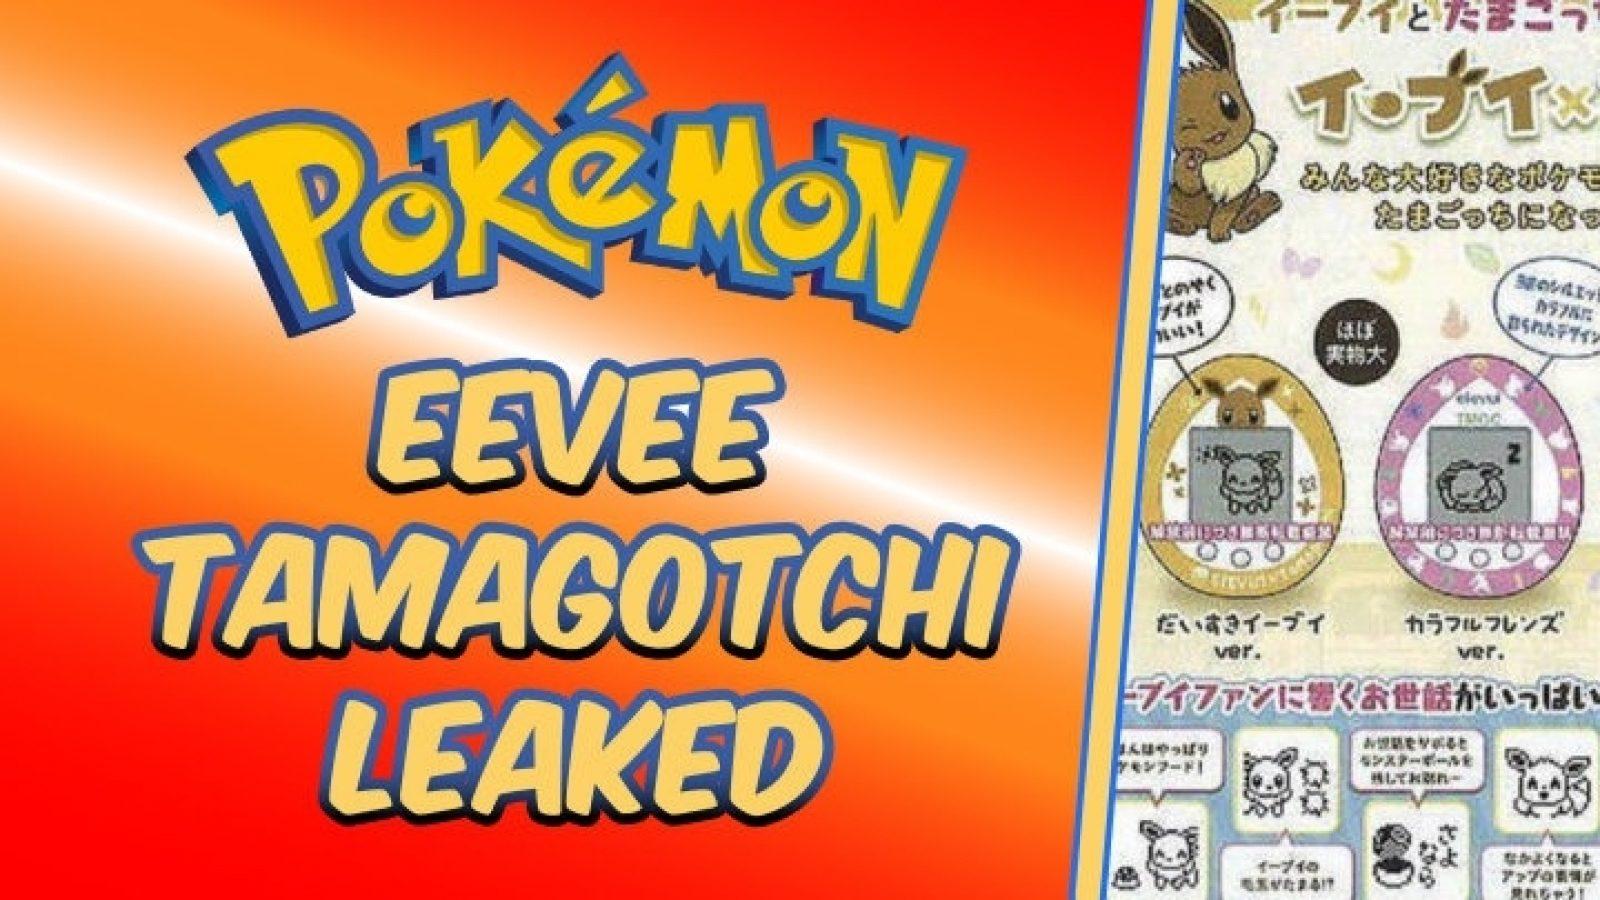 Your very own Pocket Monster: Tamagotchi x Eevee